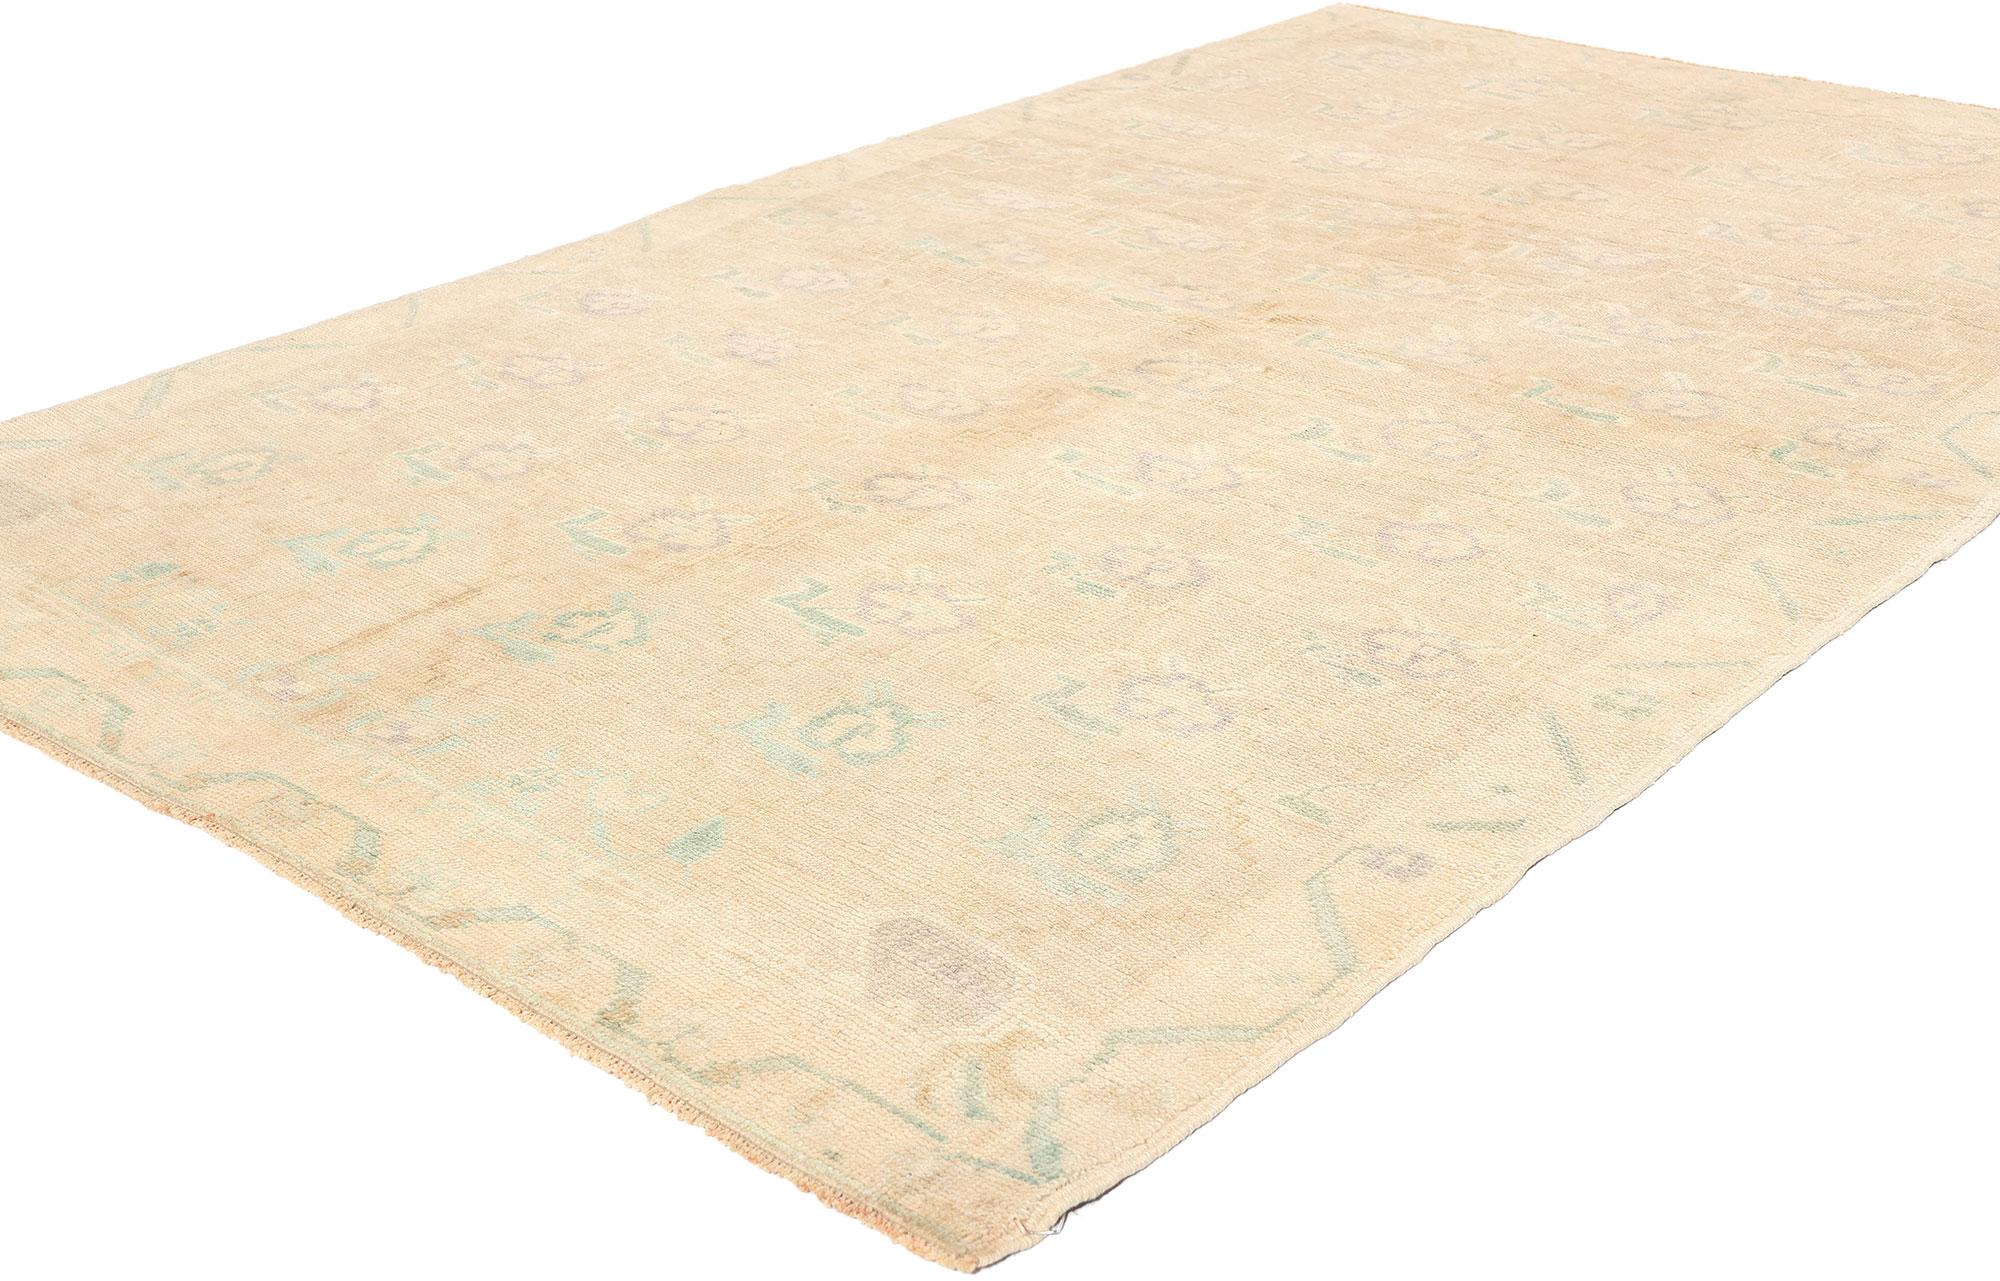 53682 Vintage Muted Turkish Oushak Rug, 04'07 x 07'06. Les tapis turcs Oushak sont des tapis tissés à la main dans la région d'Oushak en Turquie. Ils sont connus pour leurs motifs à grande échelle, leurs palettes de couleurs douces et leur mélange